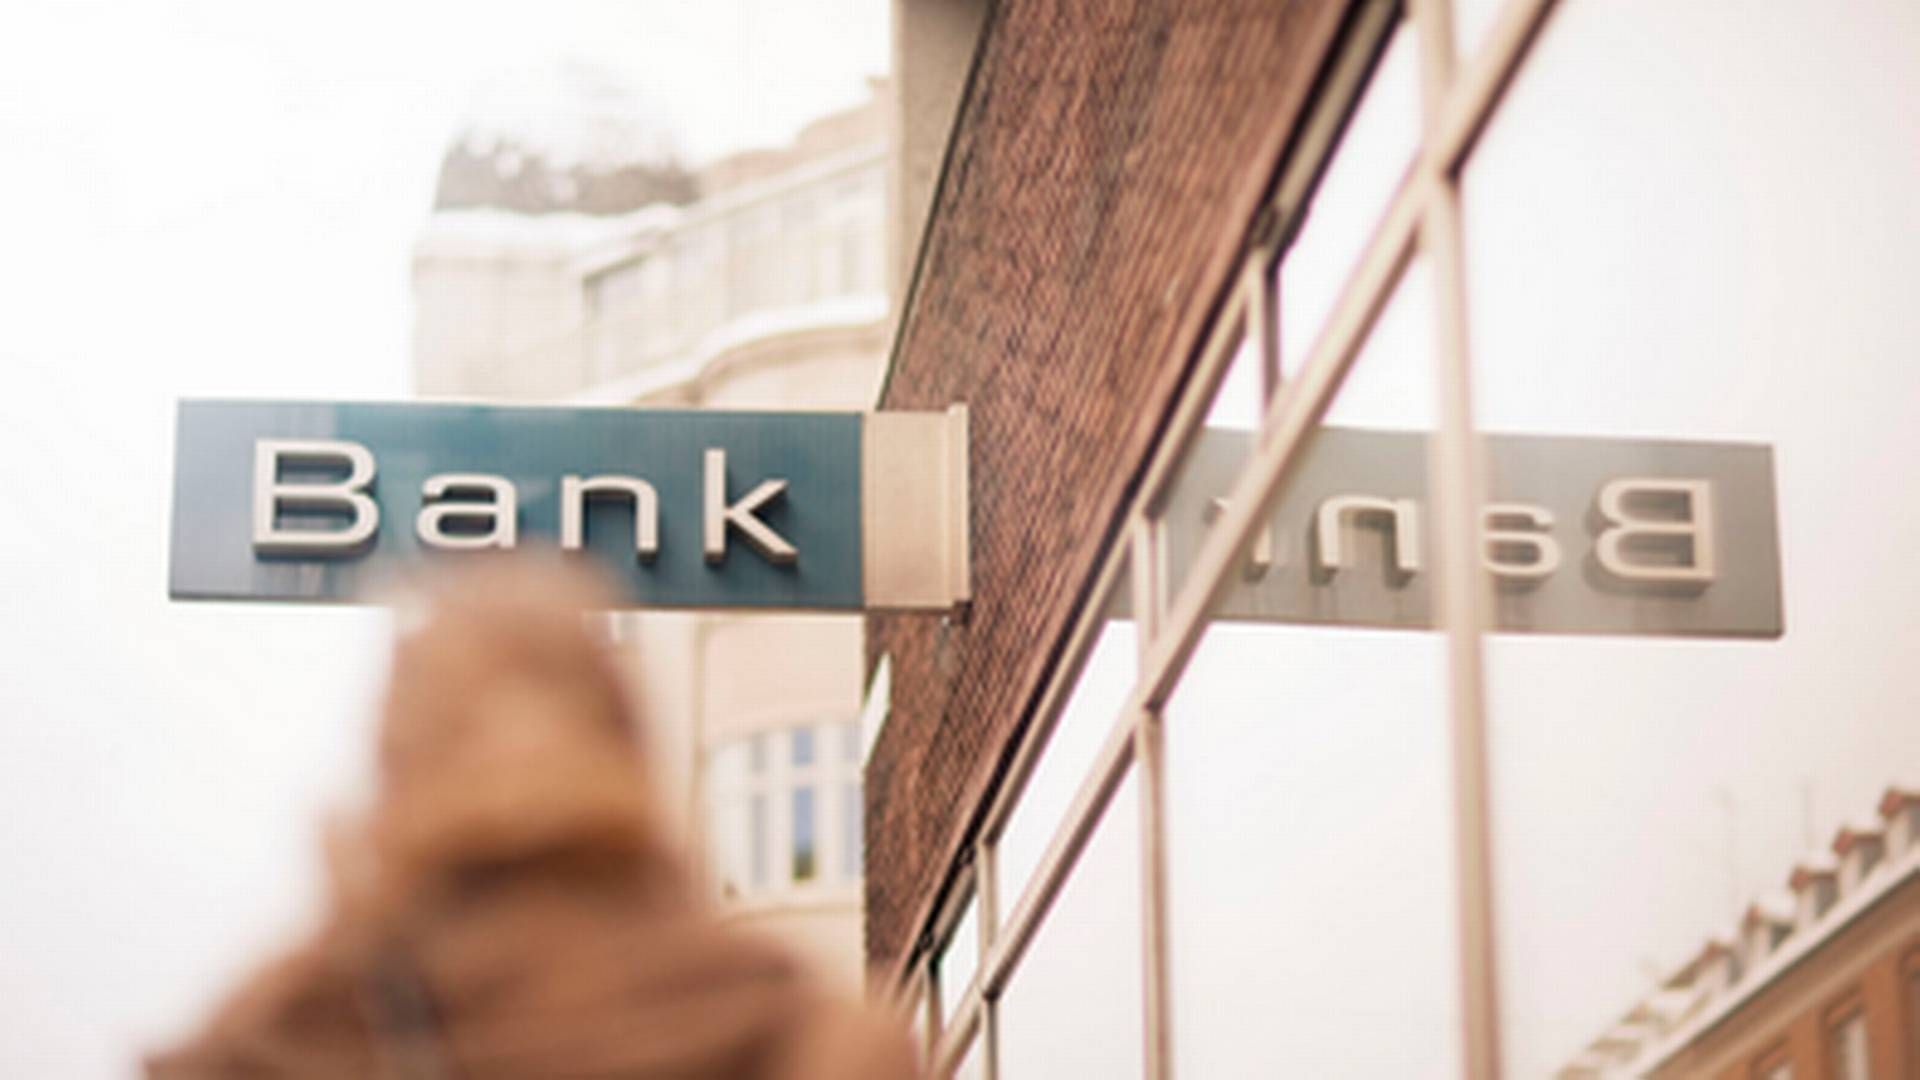 Danske Bank betaler 3,1 mia. kr. over fem år for serviceopgaver, som indiske Infosys skal stå for. | Foto: Danske Bank/pr